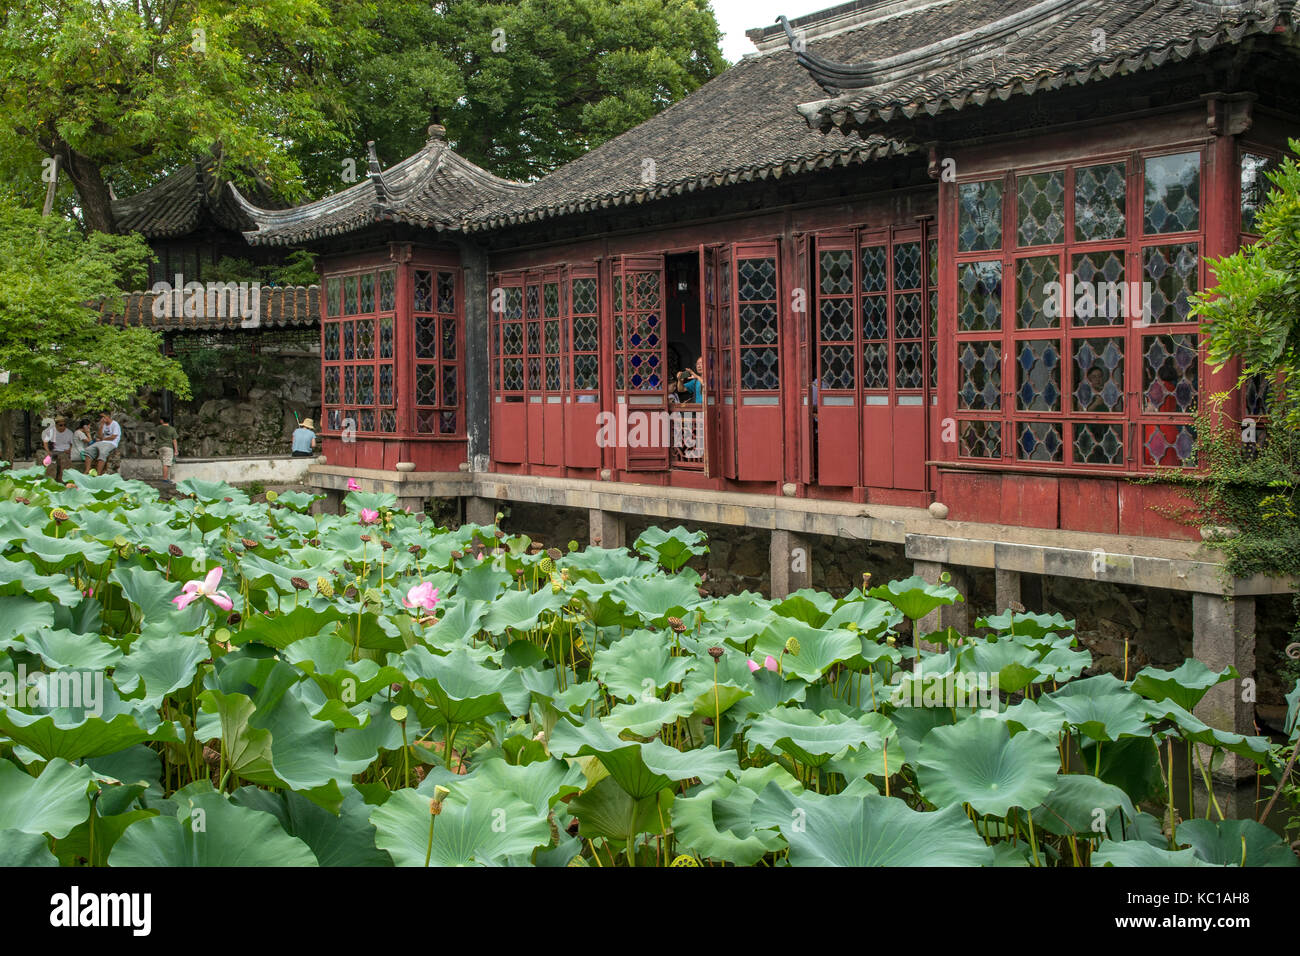 Hall de l'élégance, humble administrator's garden, Suzhou, Chine Banque D'Images